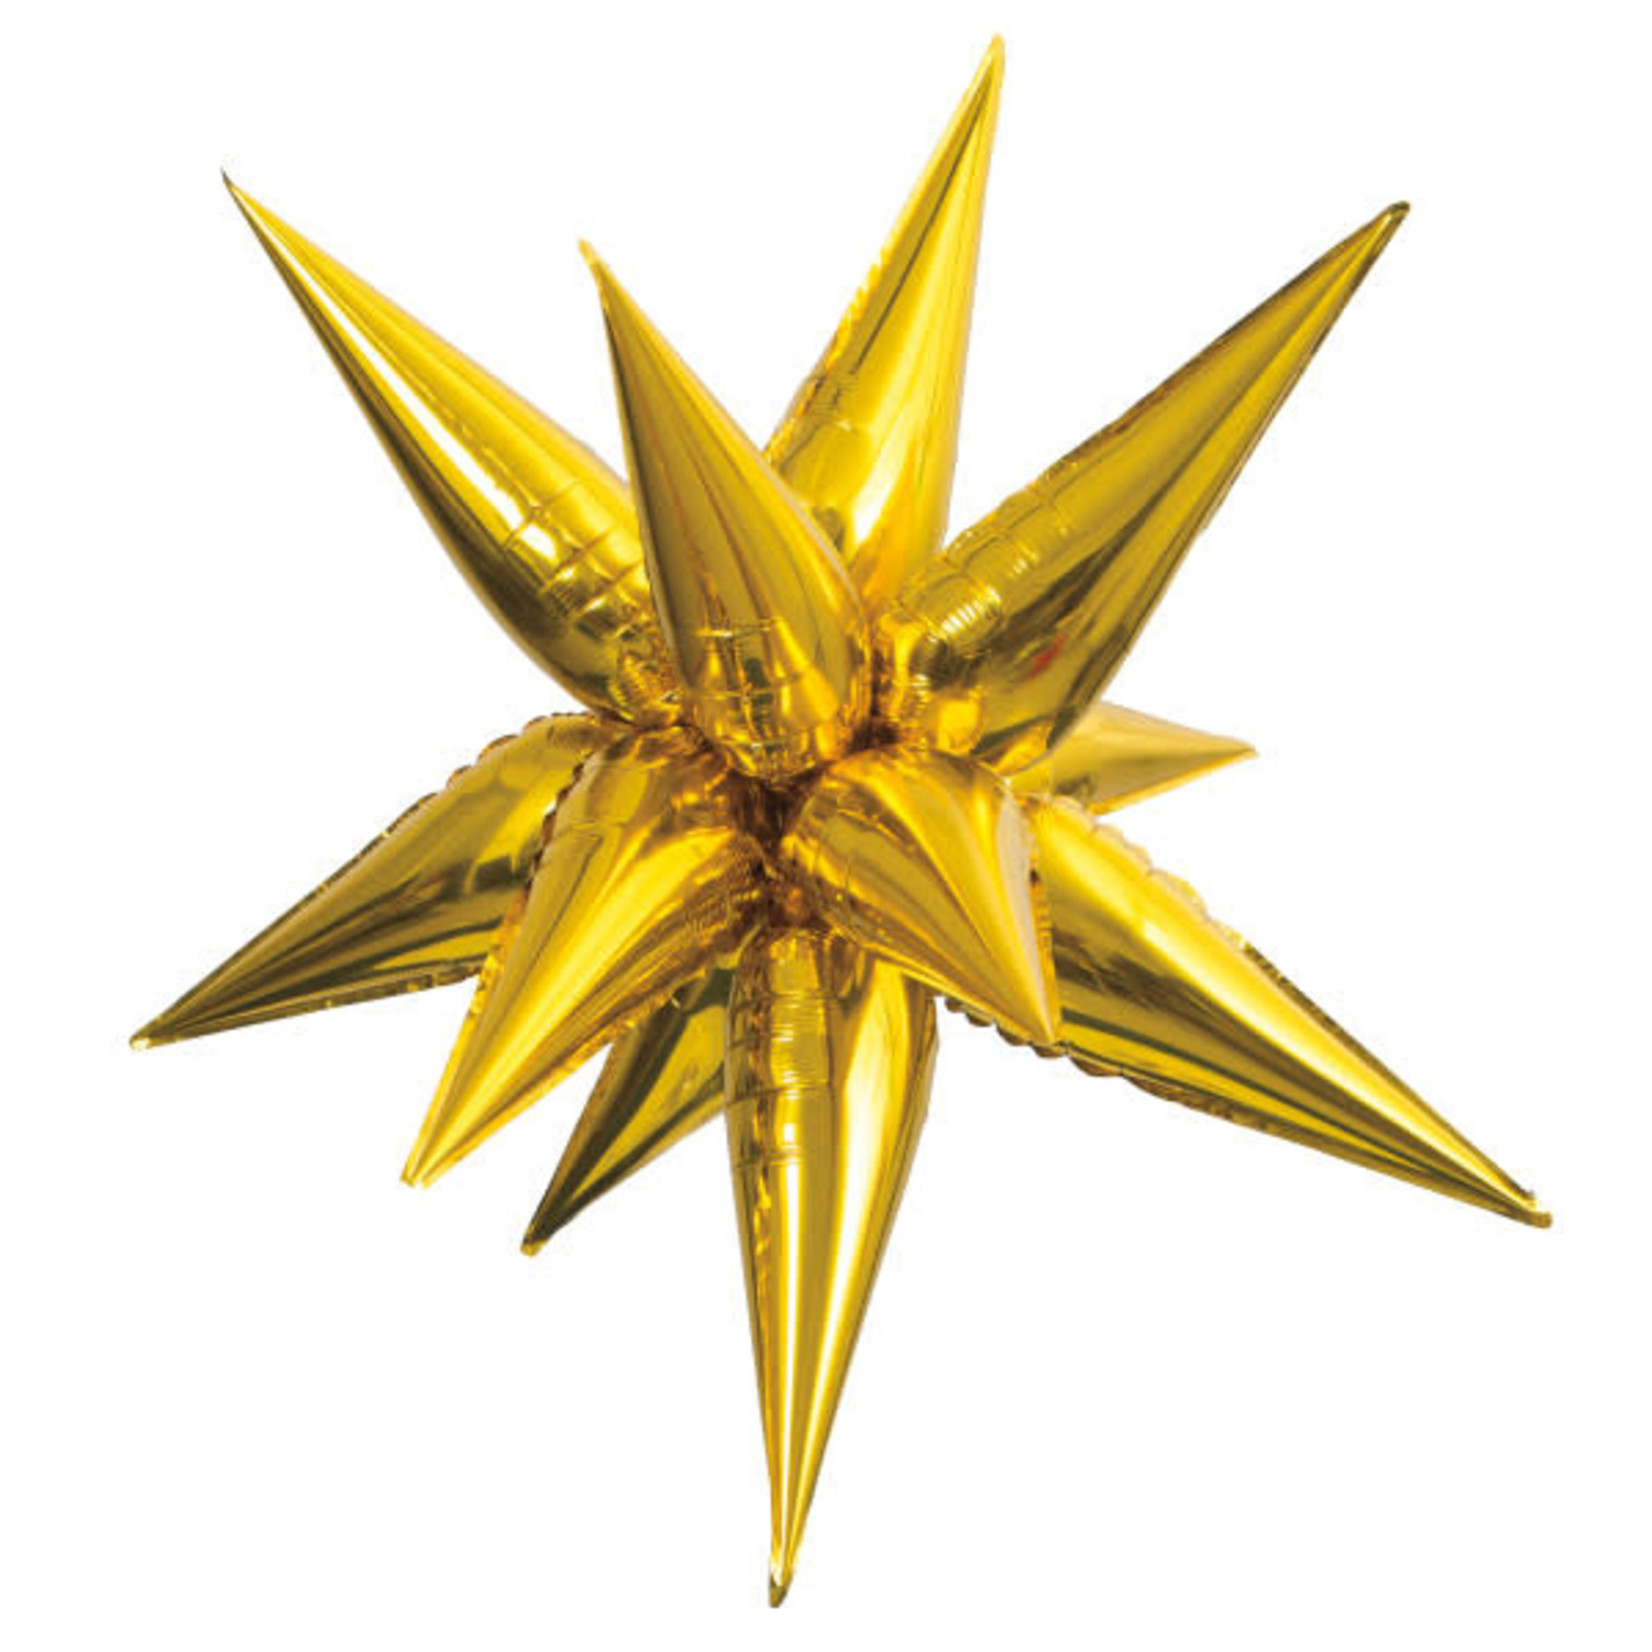 GOLD 3D STAR BALLOON 27.56"